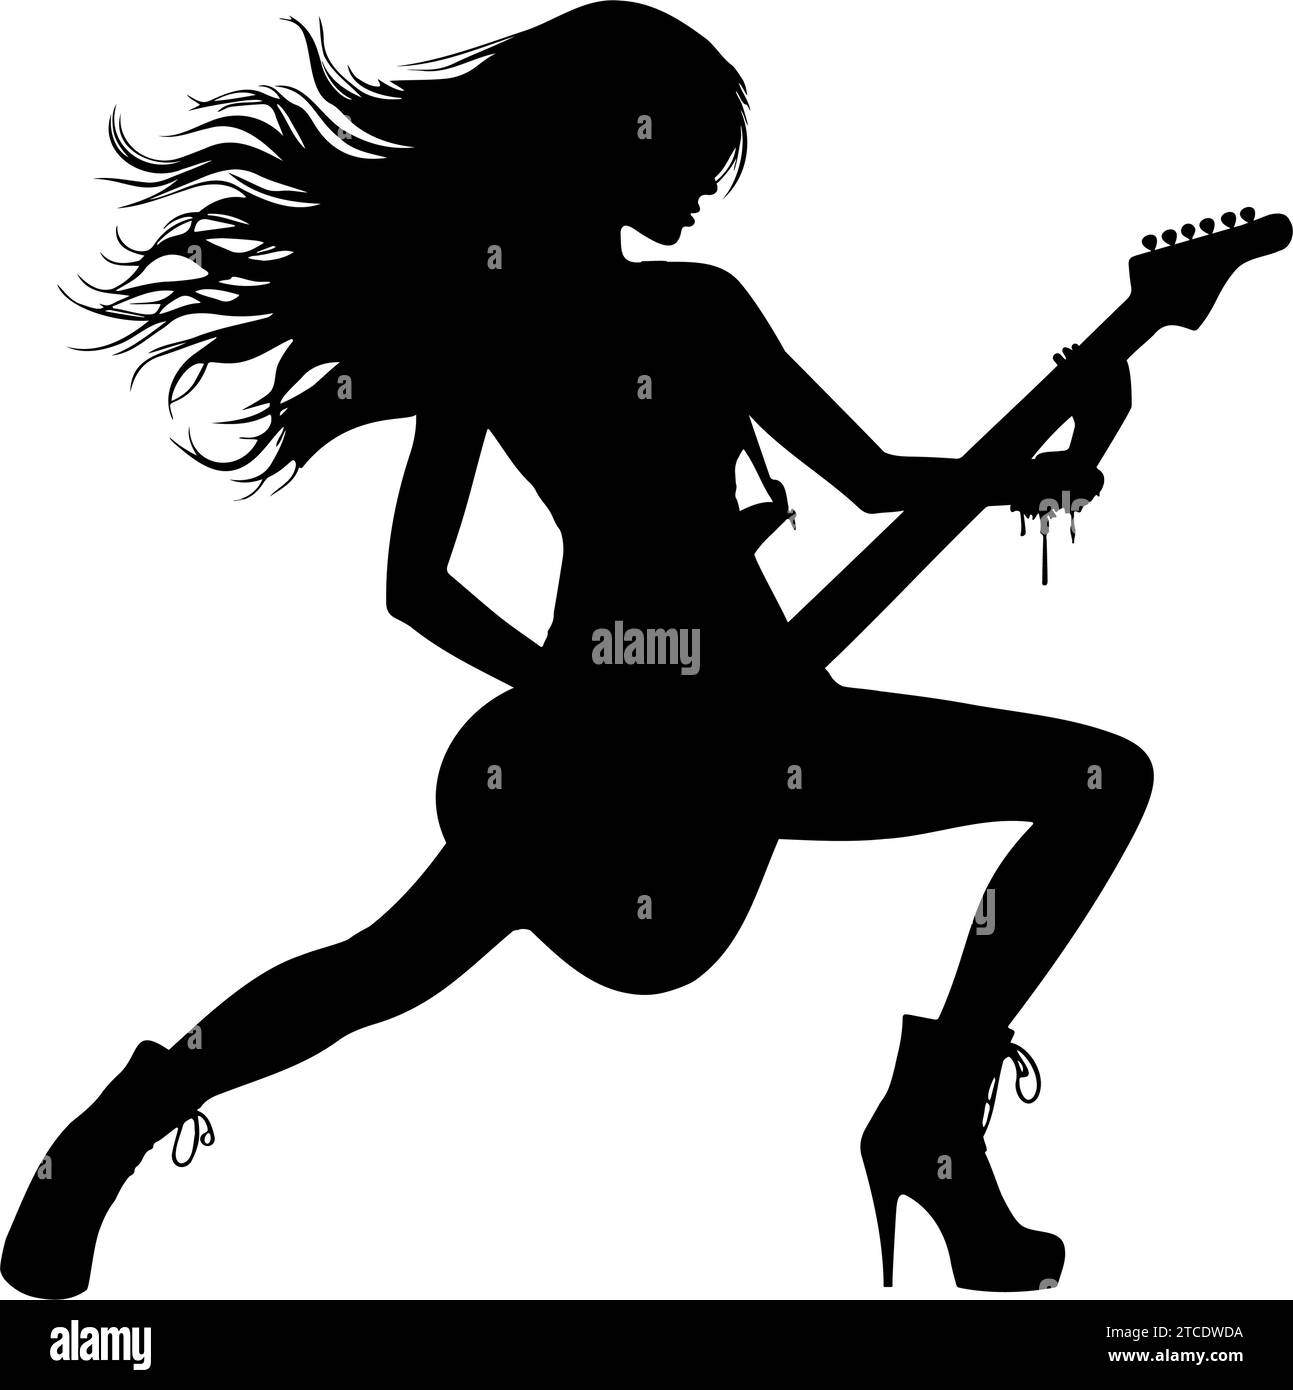 Silueta de una mujer tocando guitarra de rock. ilustración vectorial Ilustración del Vector